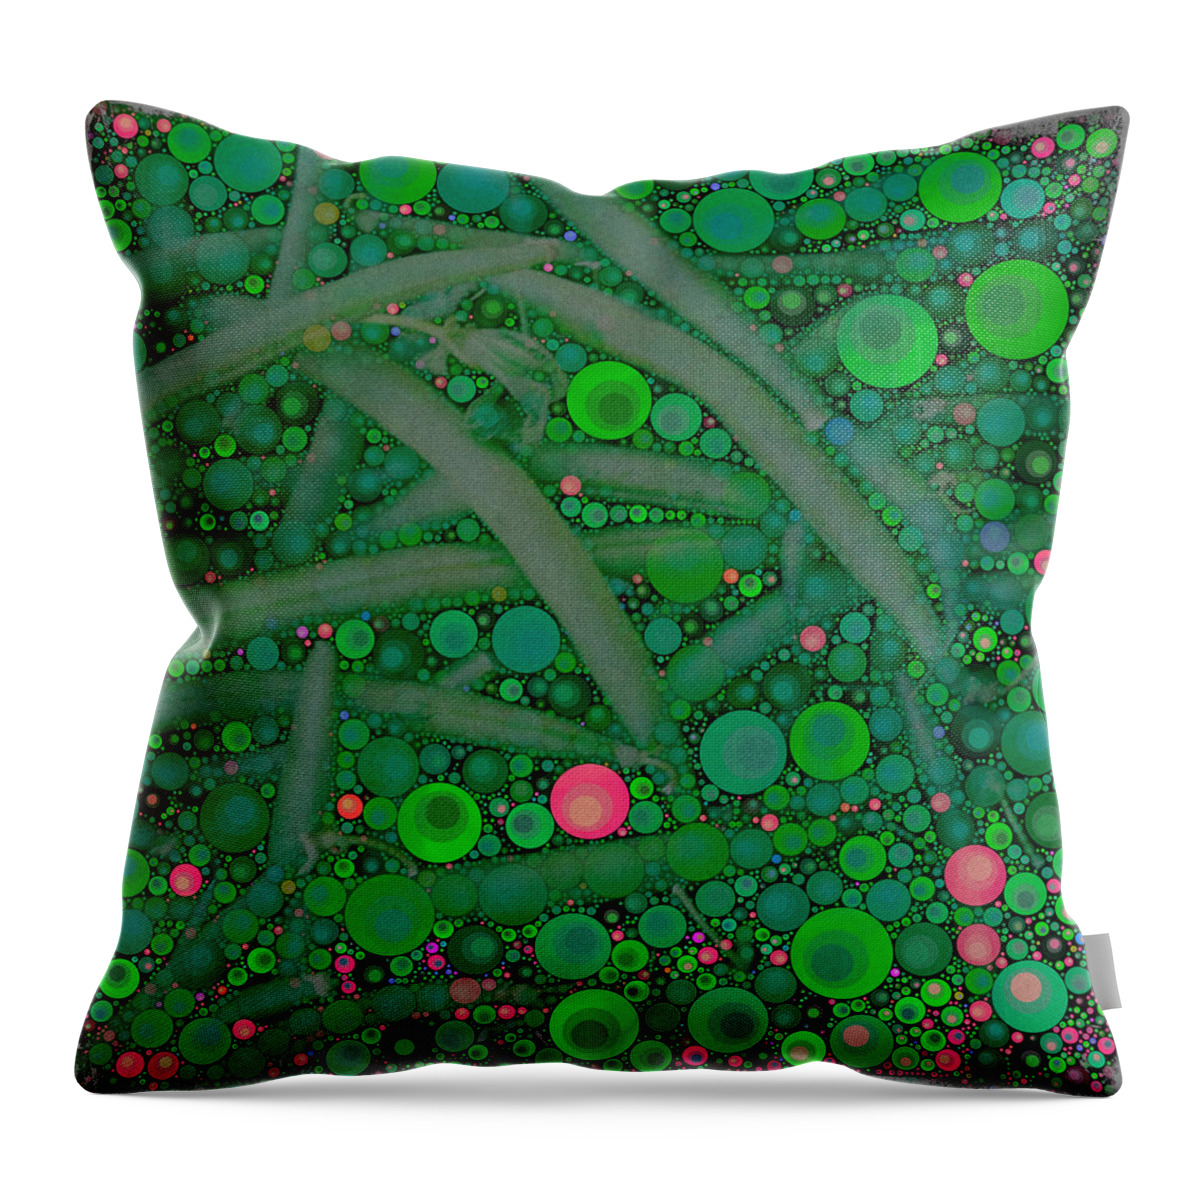 Circles Throw Pillow featuring the digital art Green Beans by Dorian Hill